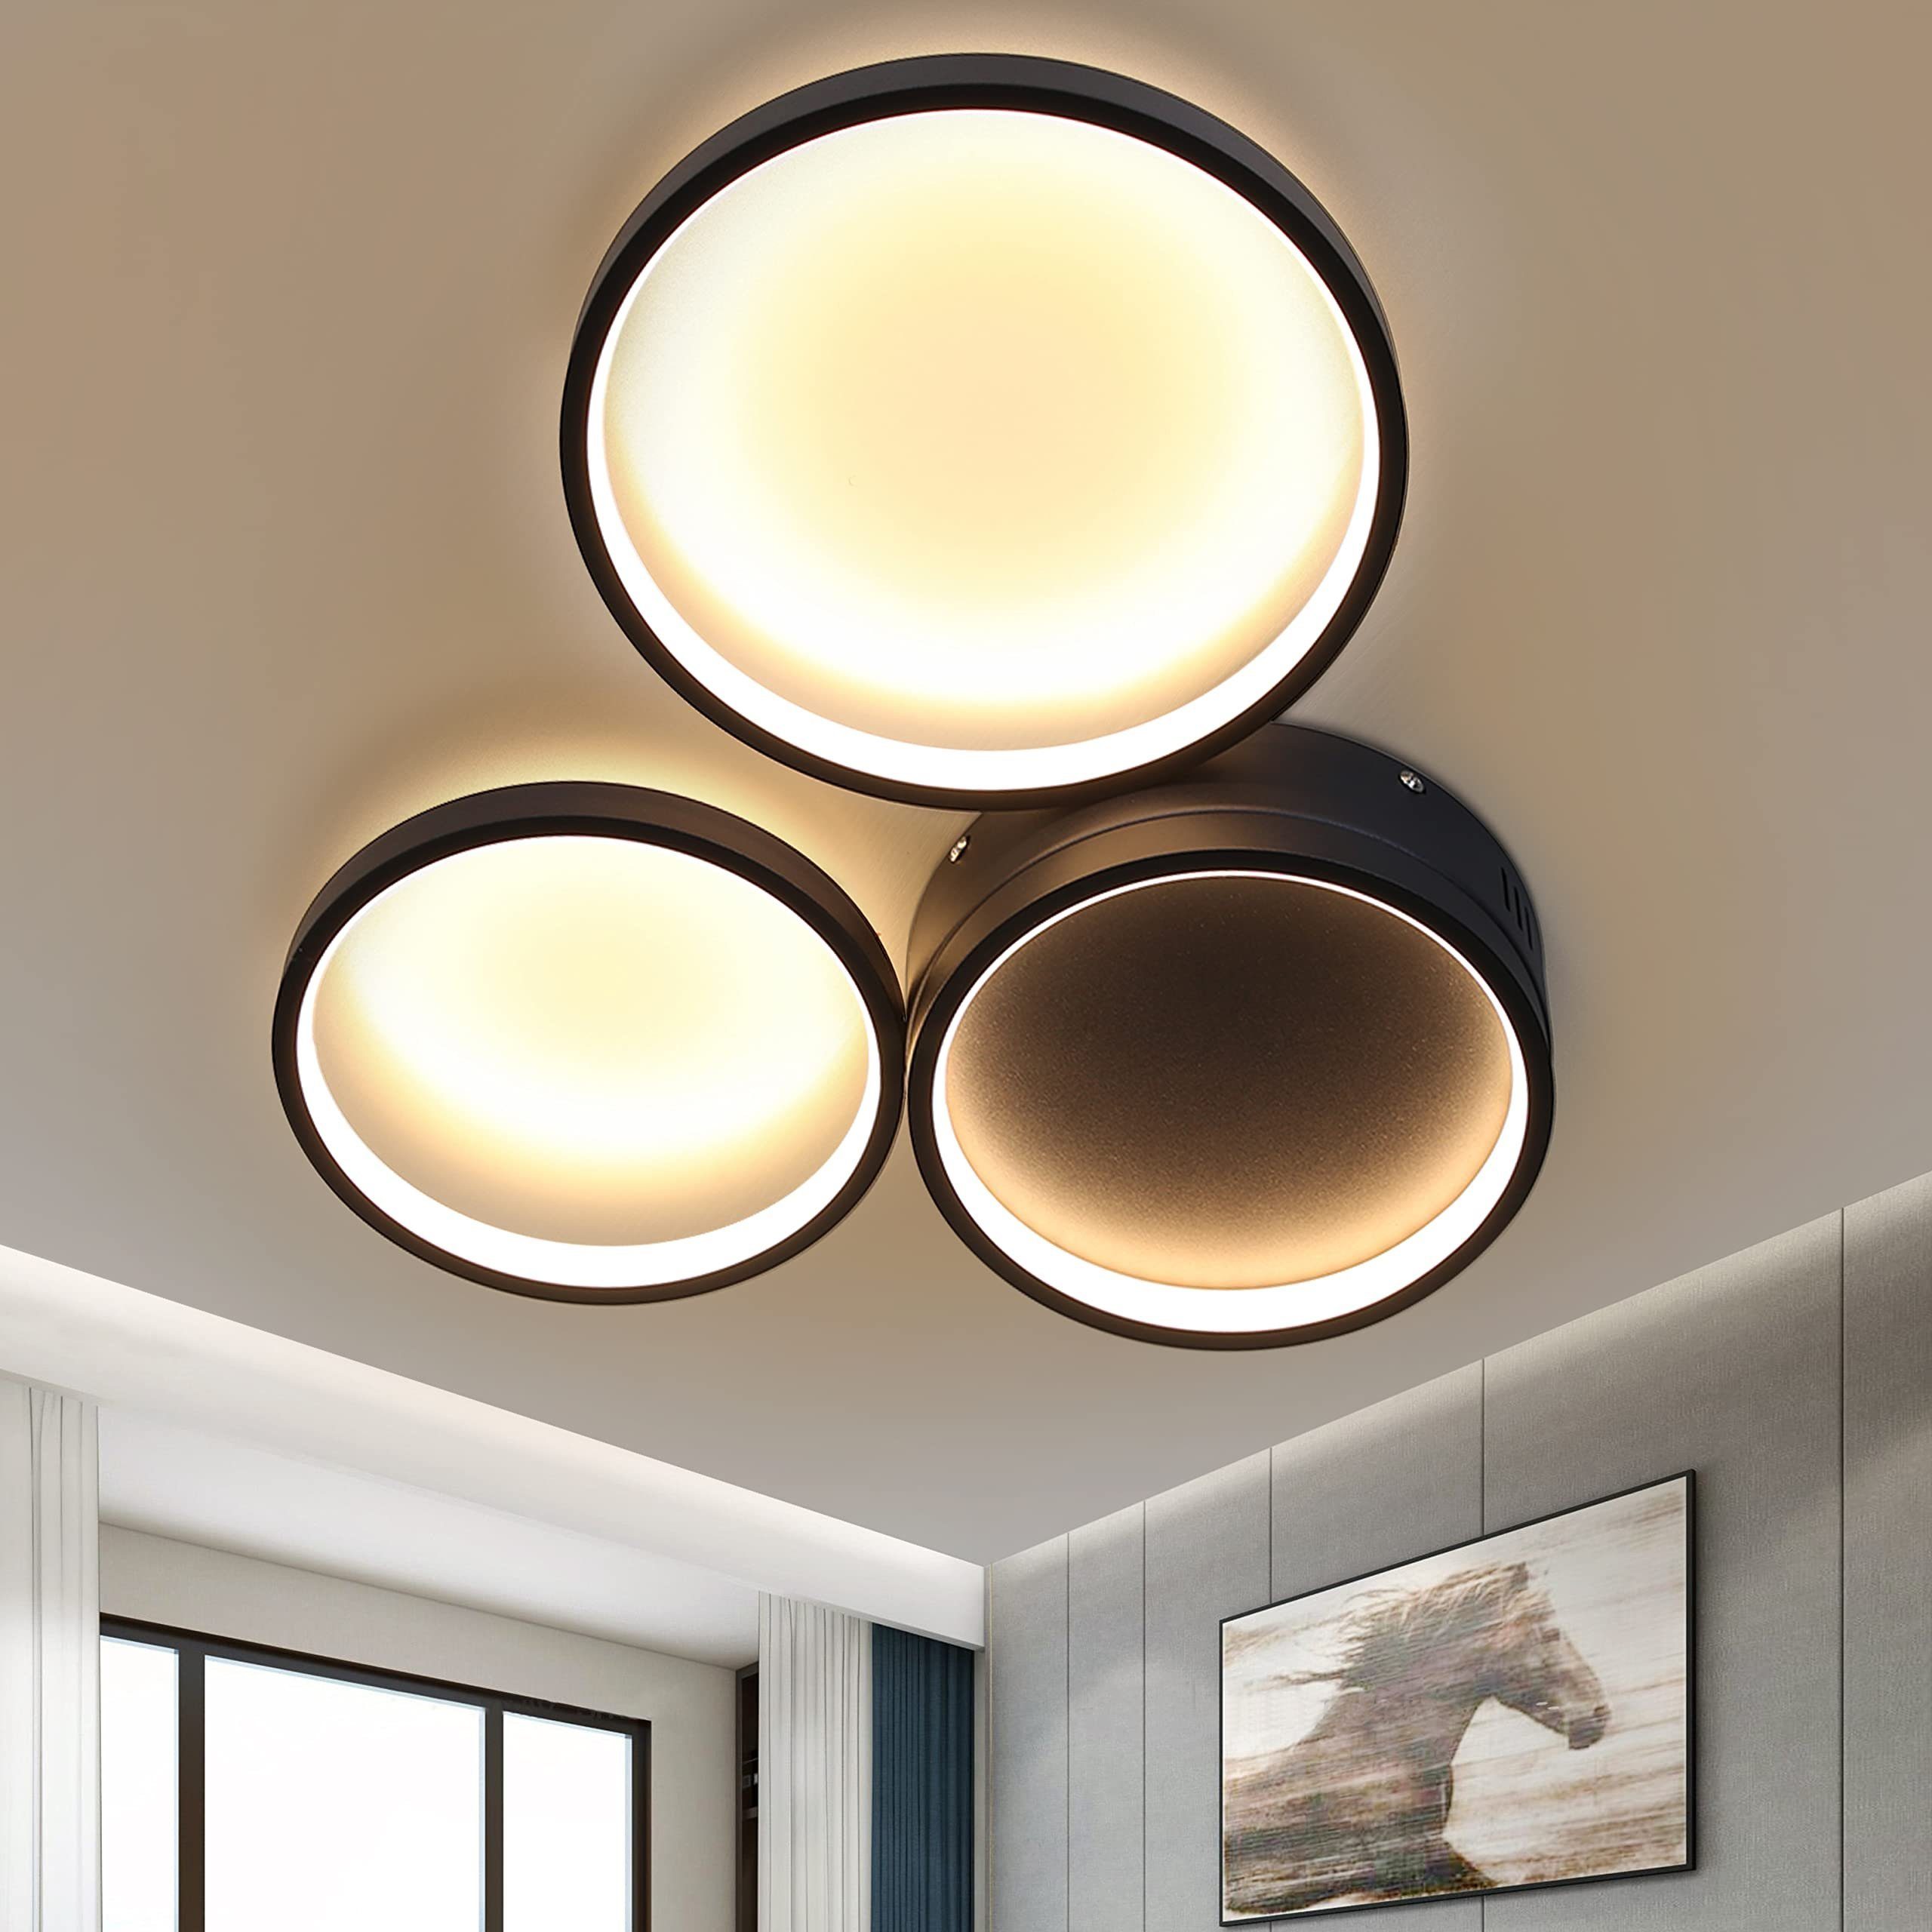 LED Design Decken Leuchte Esszimmer Lampen Flur Küchen Wohn Zimmer Deckenlampe 